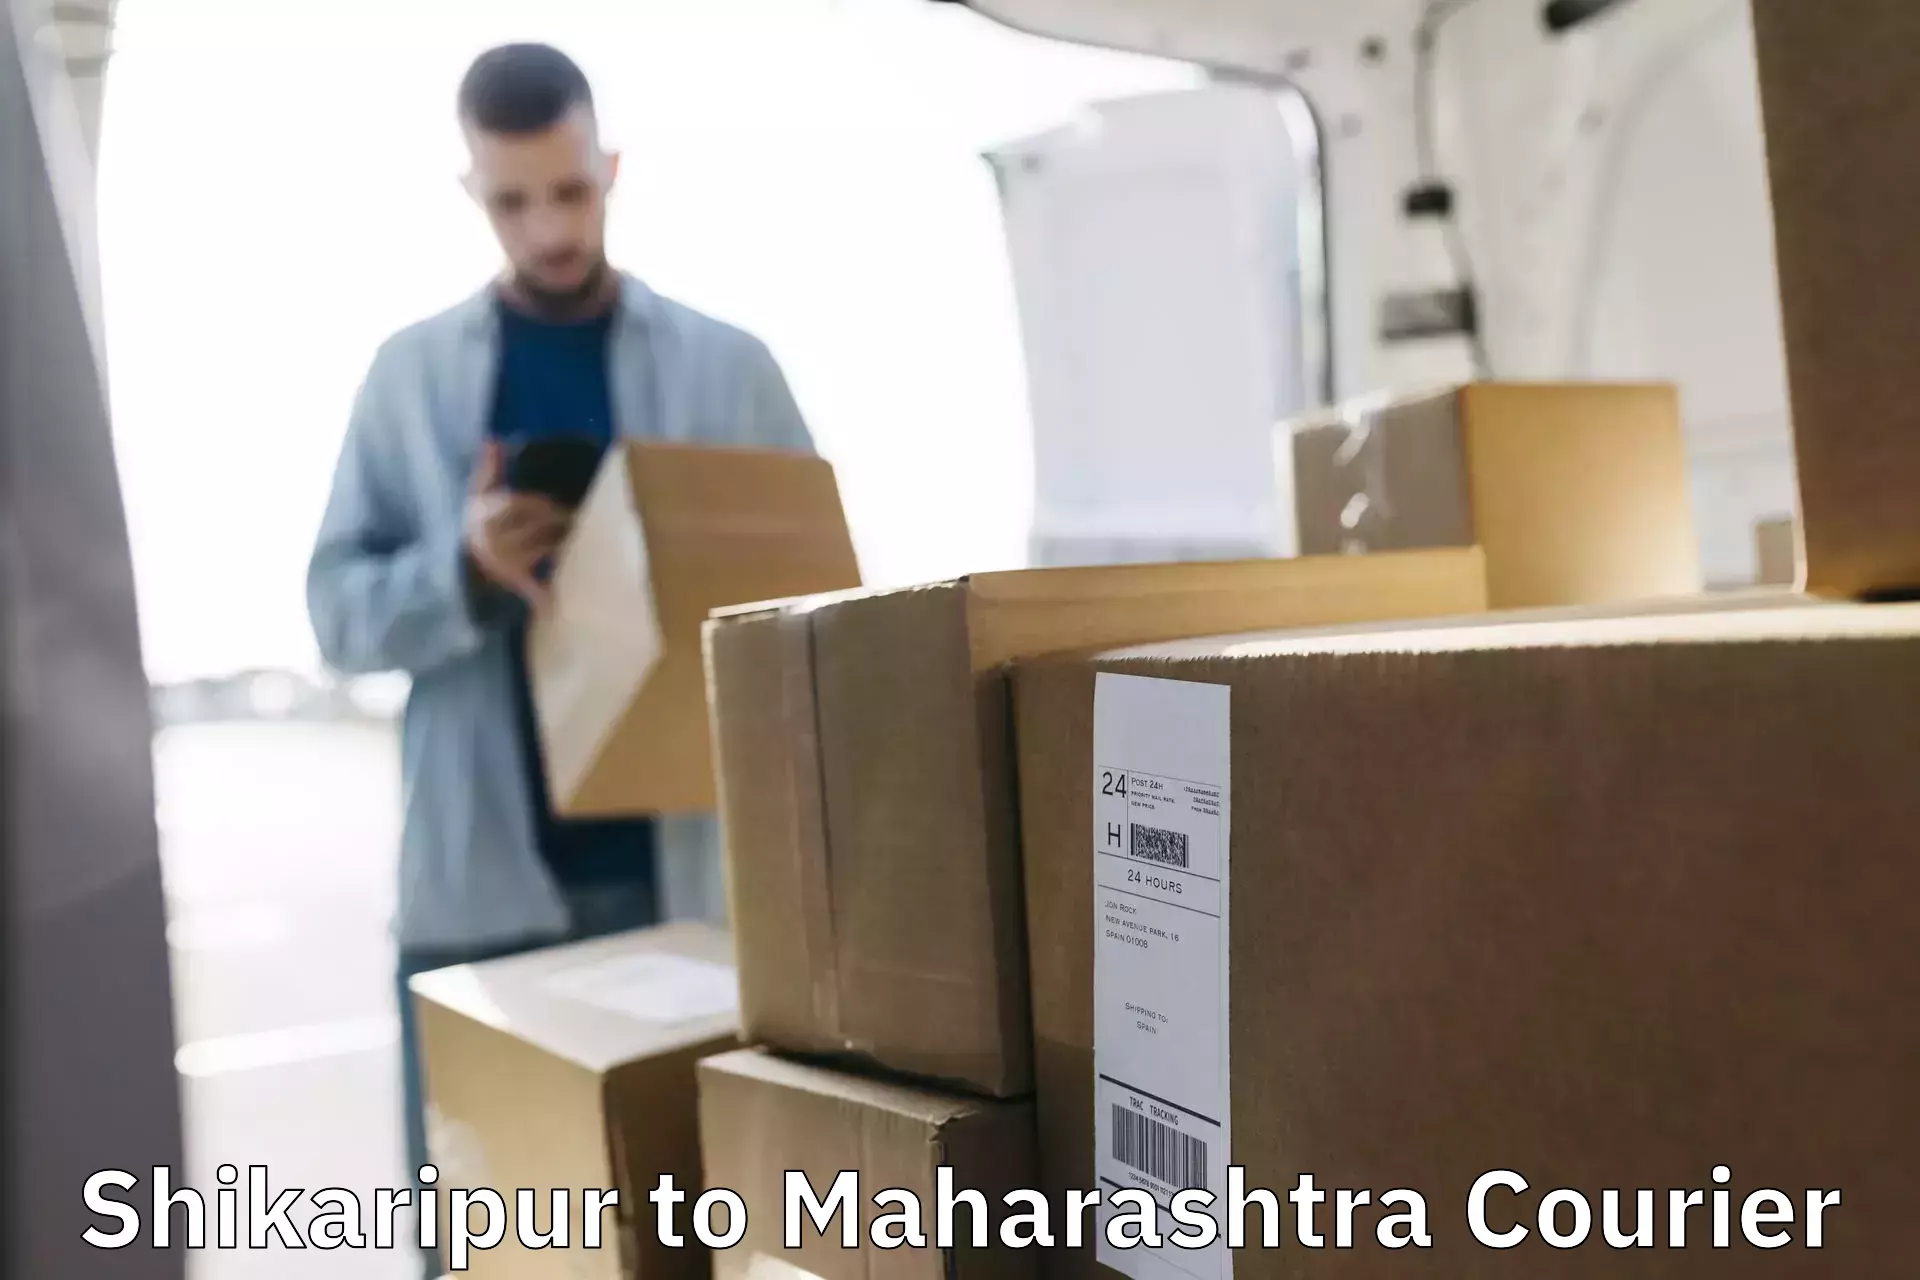 High-capacity parcel service Shikaripur to Rahimatpur